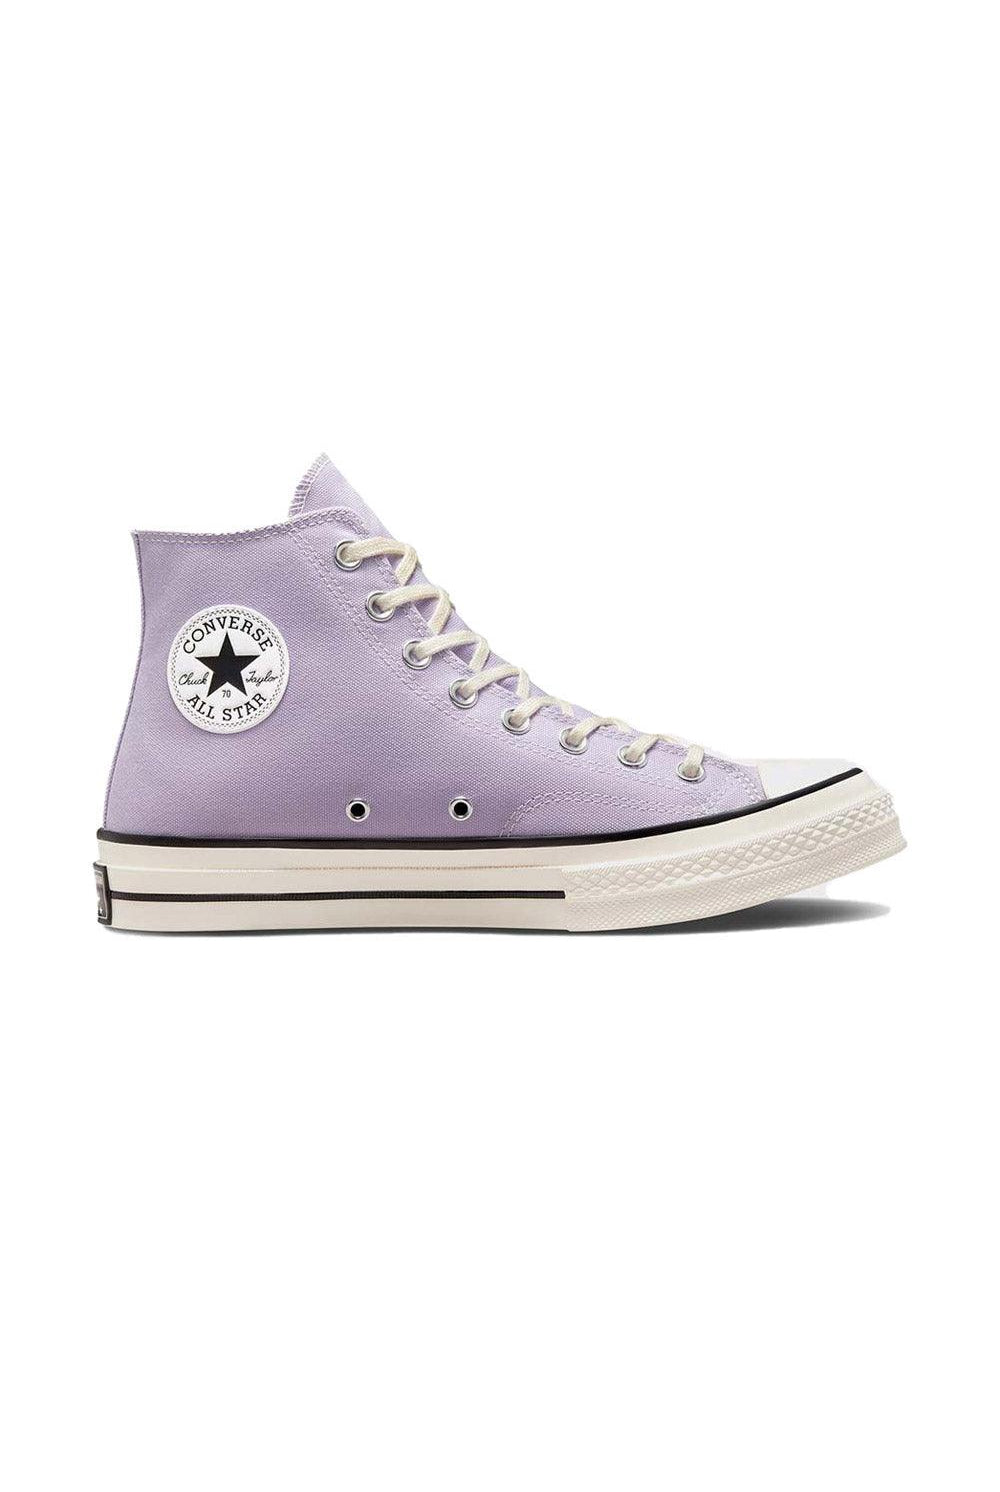 Converse | Chuck 70 Spring Color Vapor Violet | Milagron